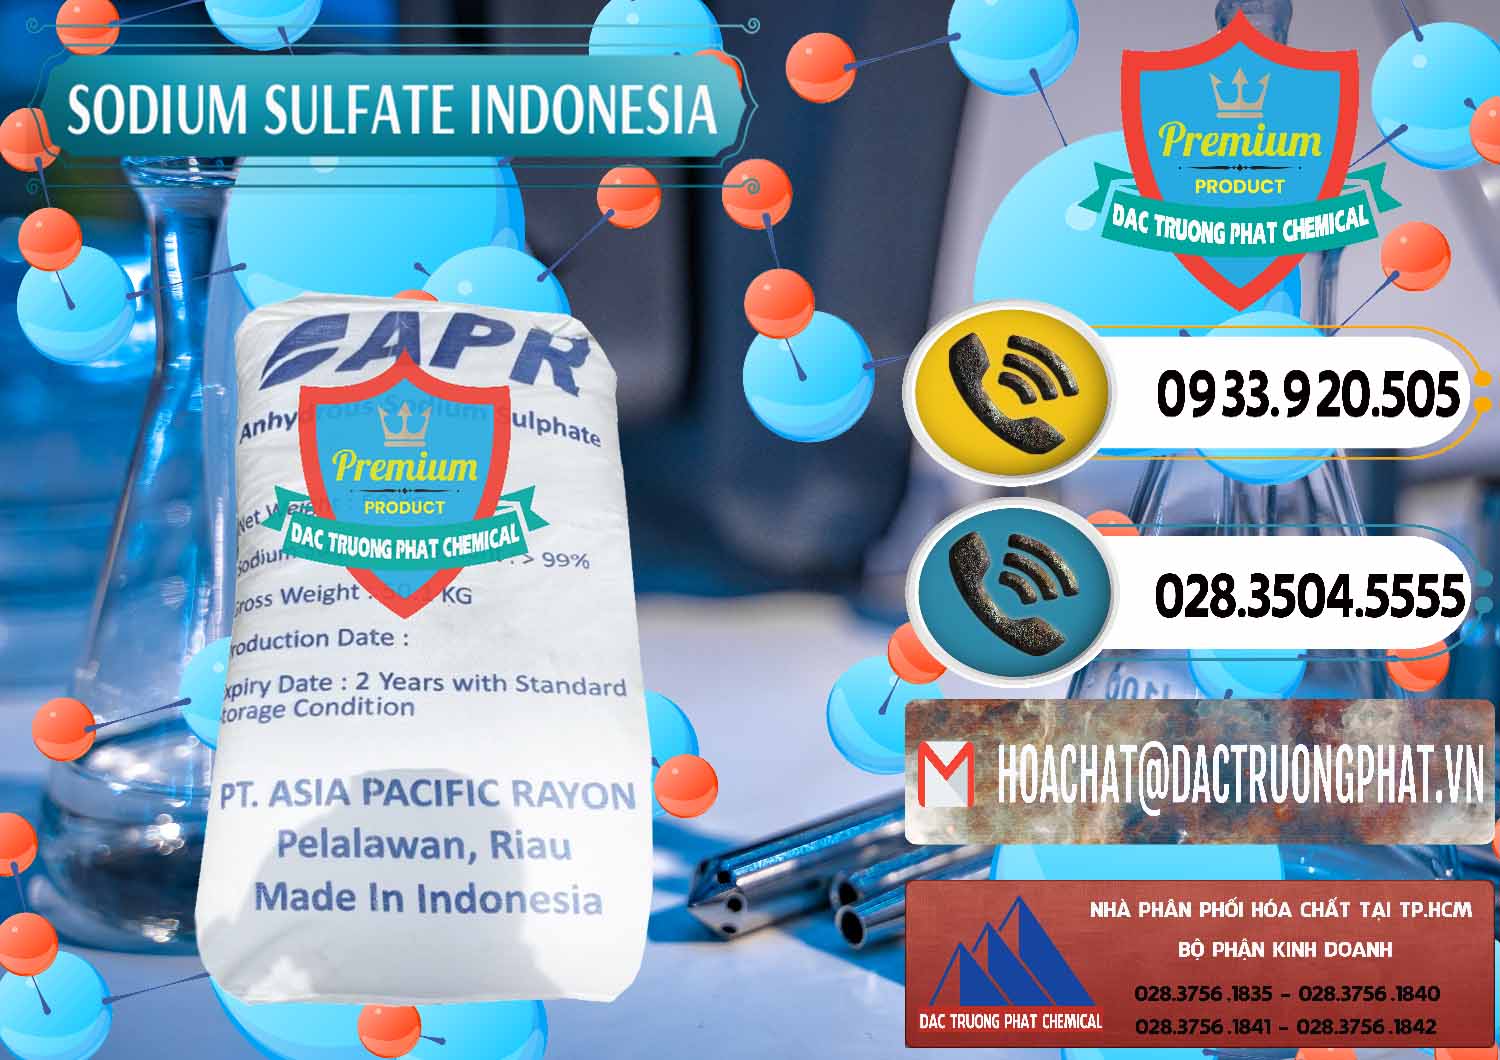 Cty bán và phân phối Sodium Sulphate - Muối Sunfat Na2SO4 APR Indonesia - 0460 - Nhà cung cấp - kinh doanh hóa chất tại TP.HCM - hoachatdetnhuom.vn